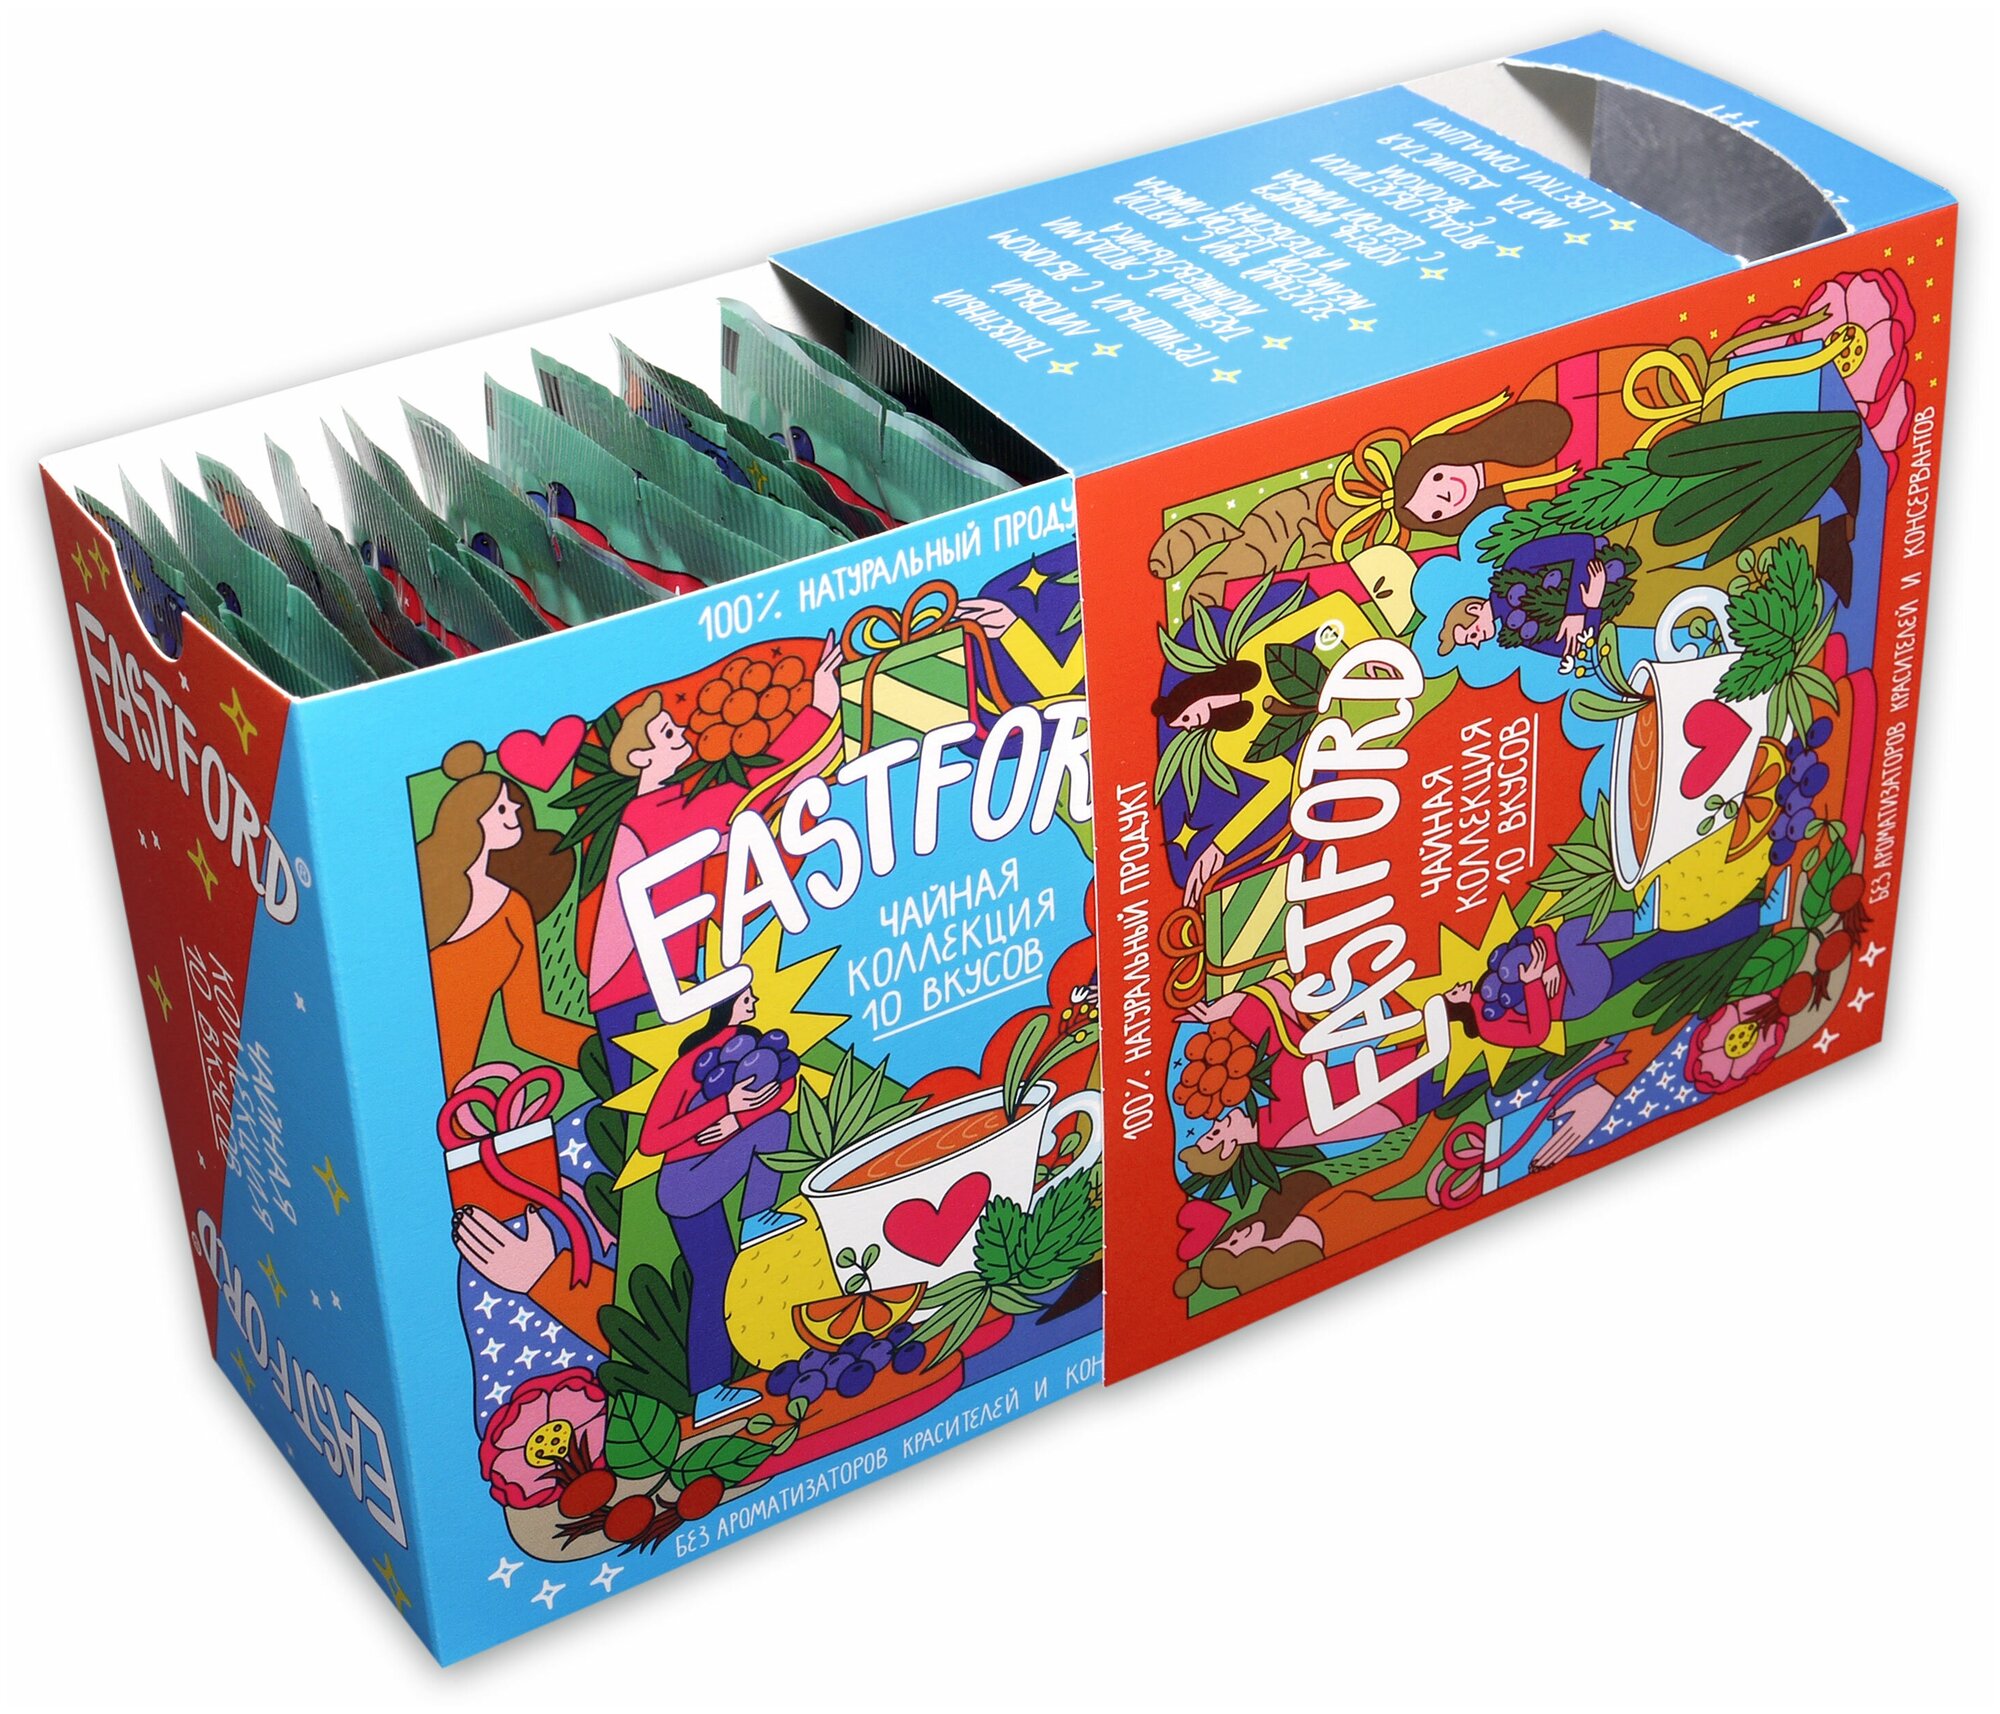 Чай EASTFORD подарочный набор в больших фильтр-пакетах чайная коллекция вкусов - фотография № 11